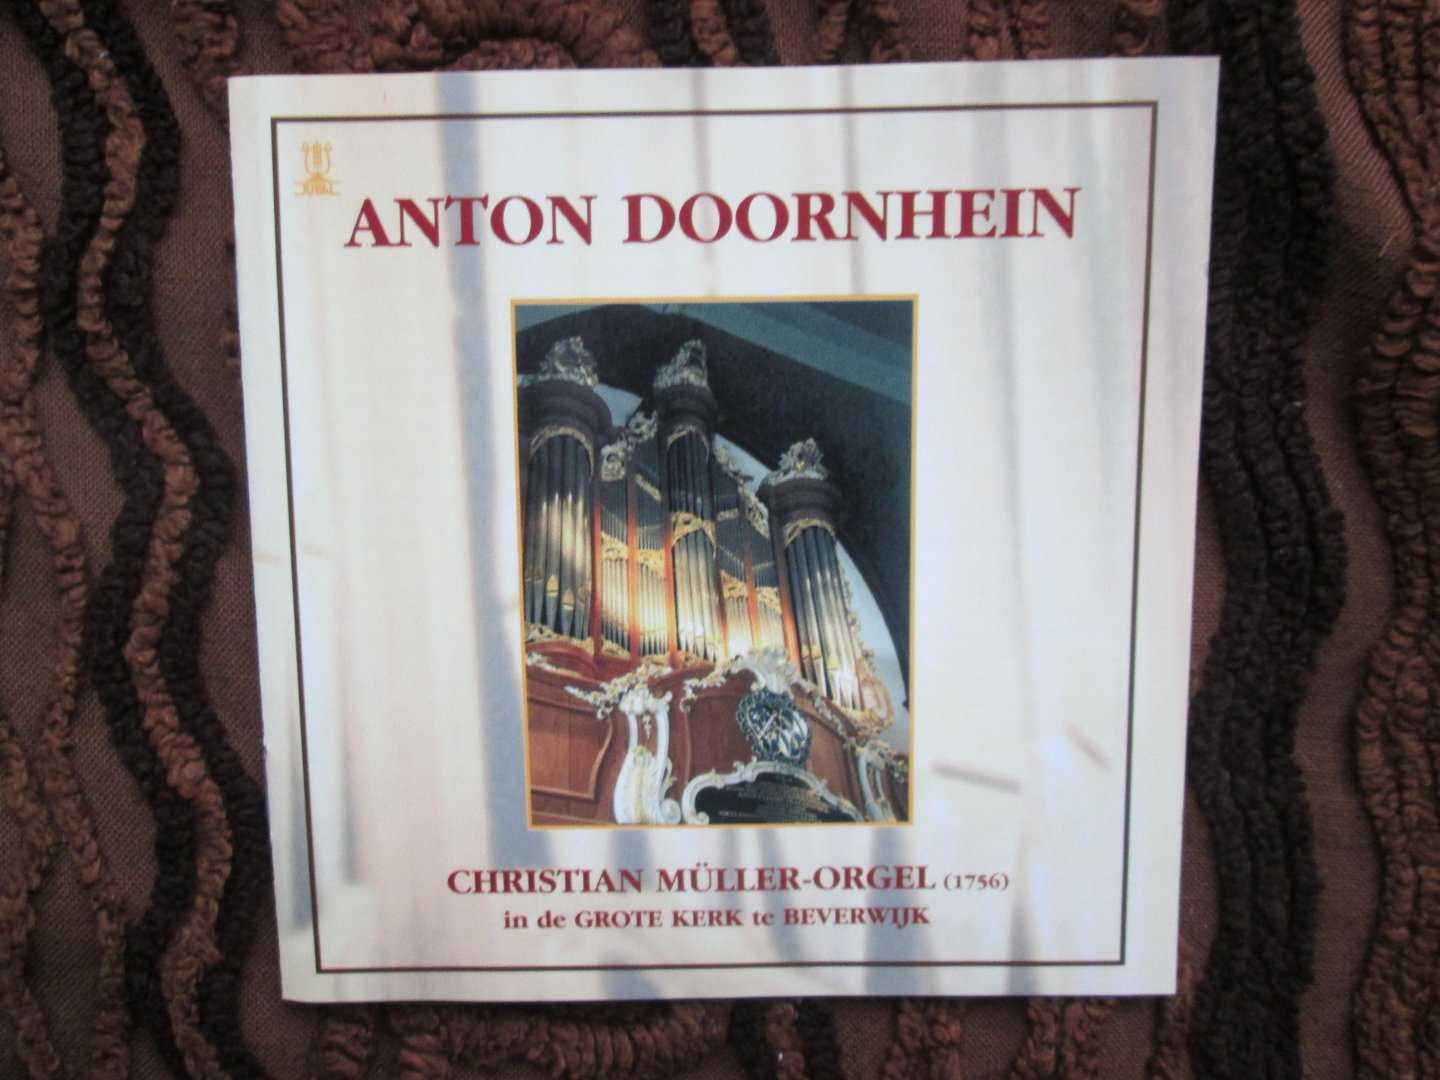 CD met barokmuziek voor orgel - ANTON DOORNHEIN ; Christian Muller-orgel ( 1756 ) in de Grote Kerk te Beverwijk